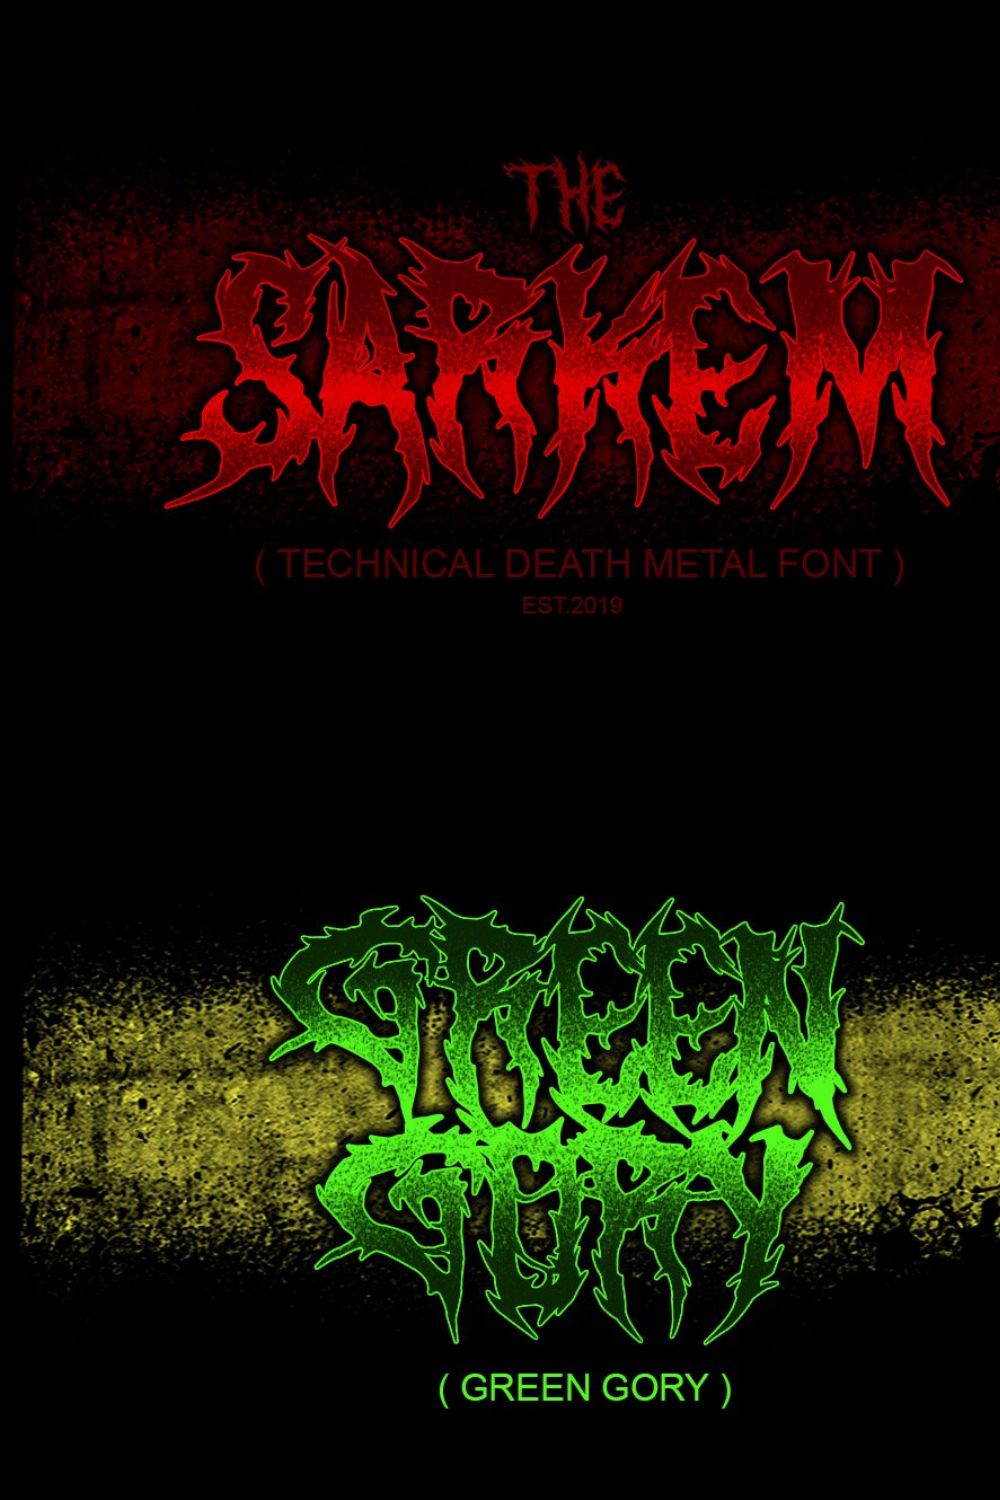 SARKEM / TECHNICAL DEATH METAL FONT pinterest preview image.